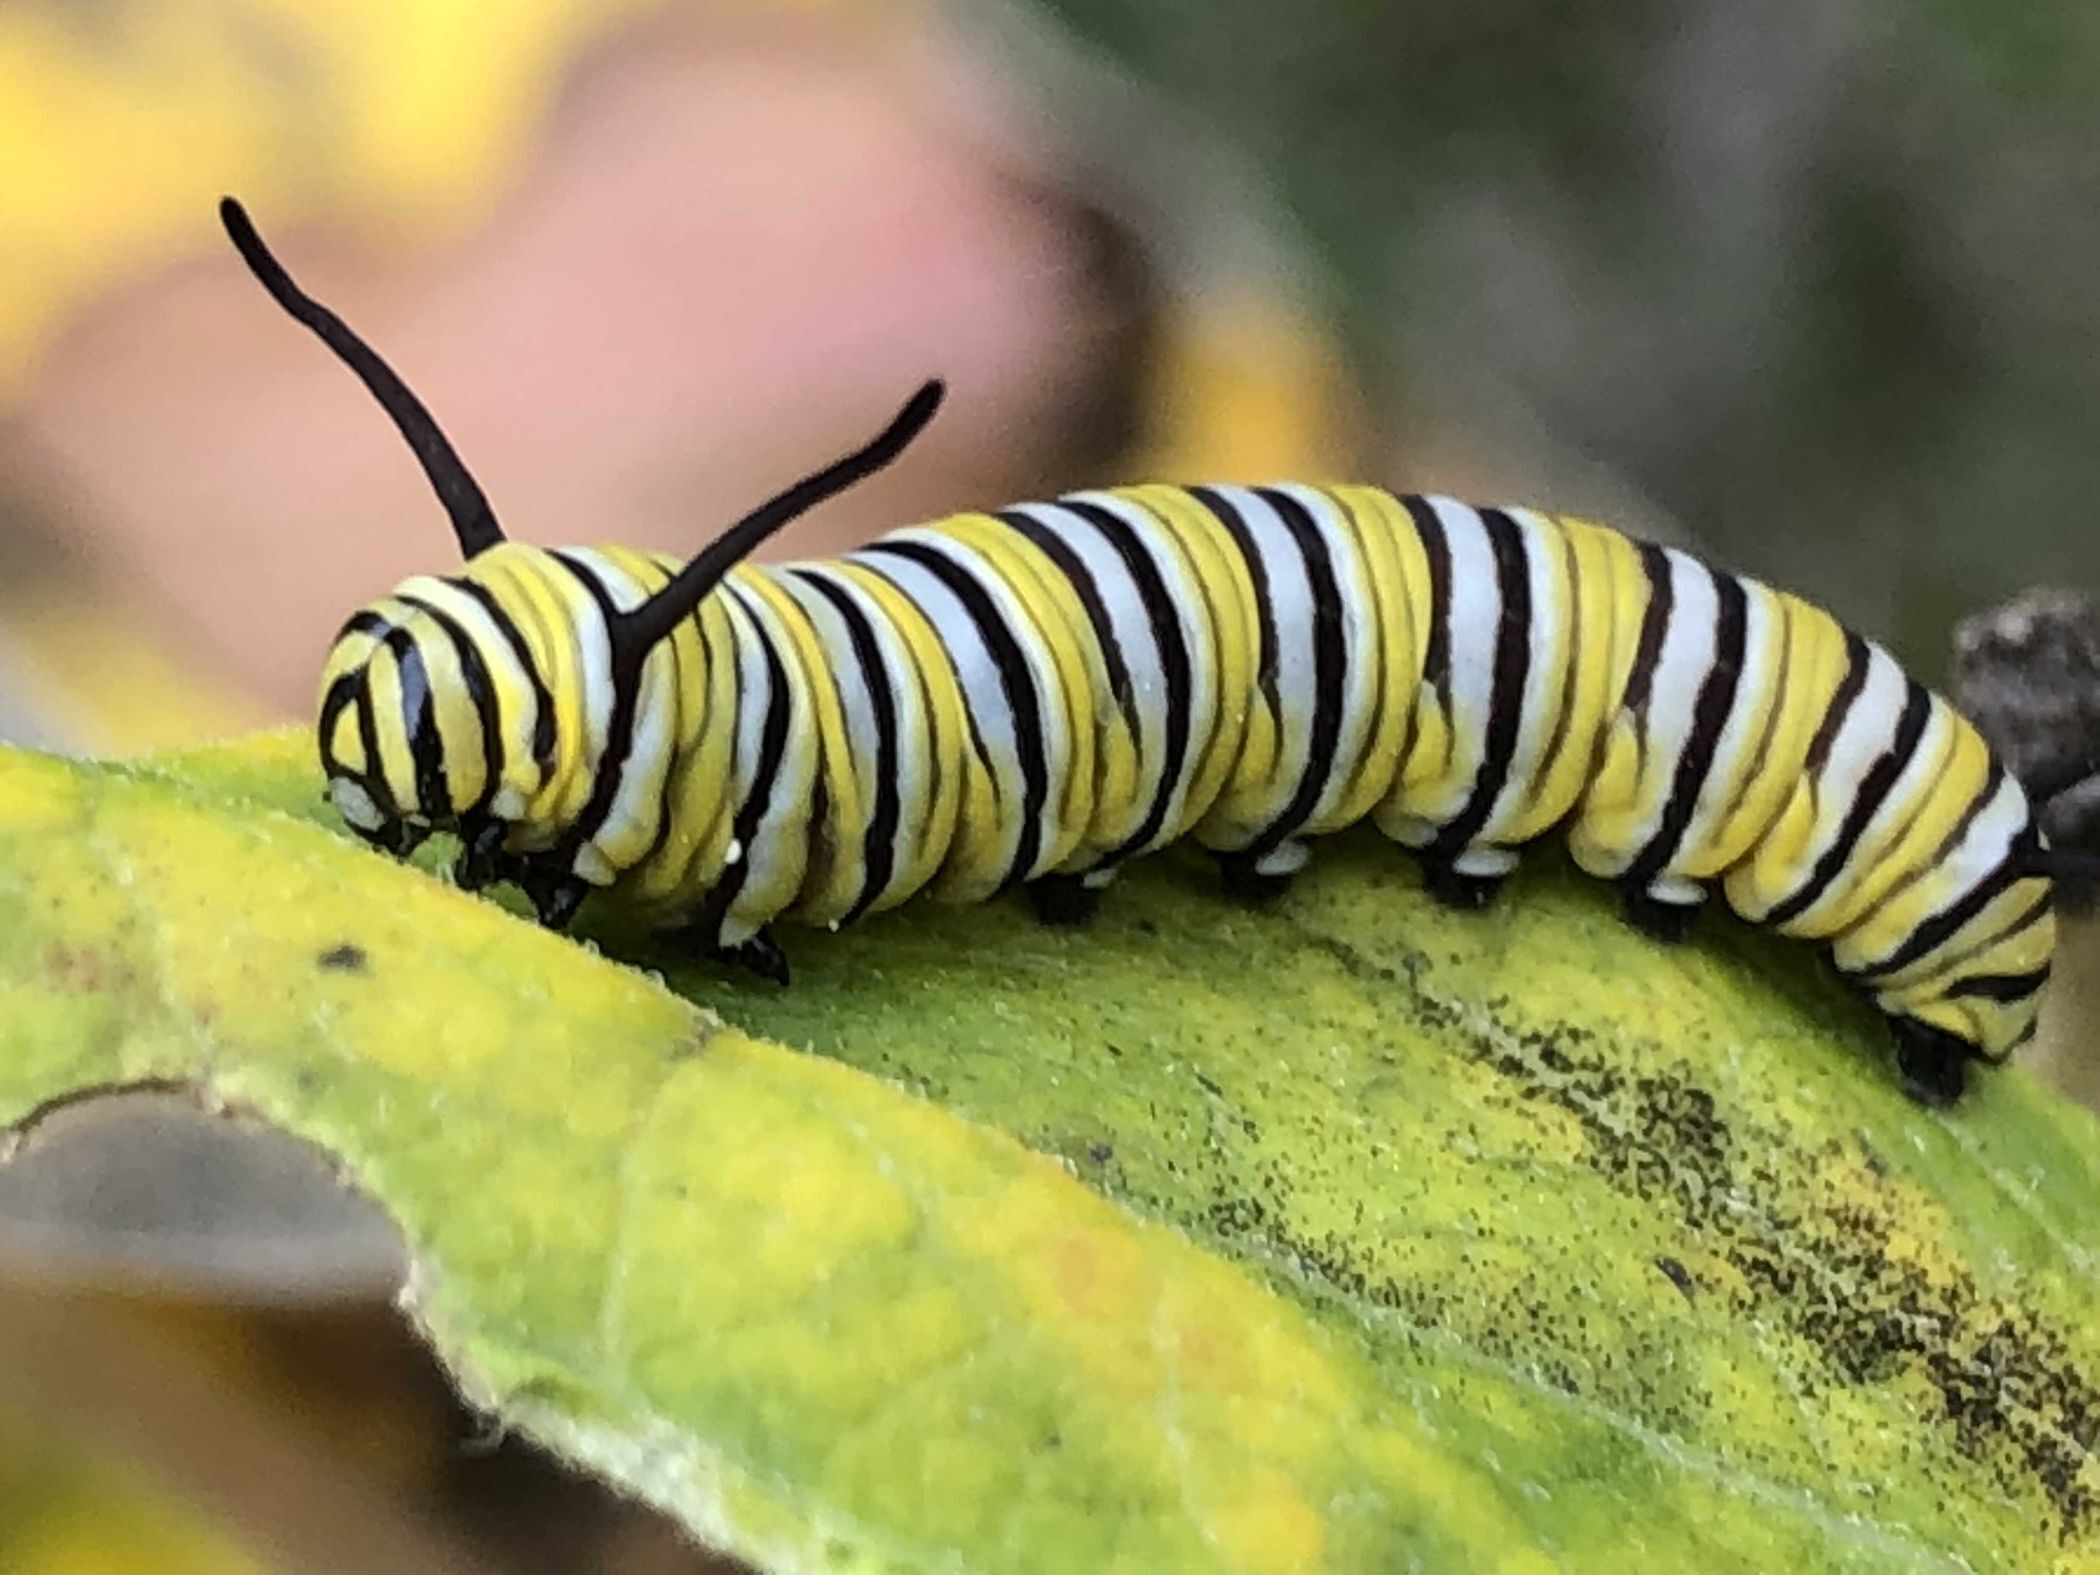 Monarch Butterfly caterpillar